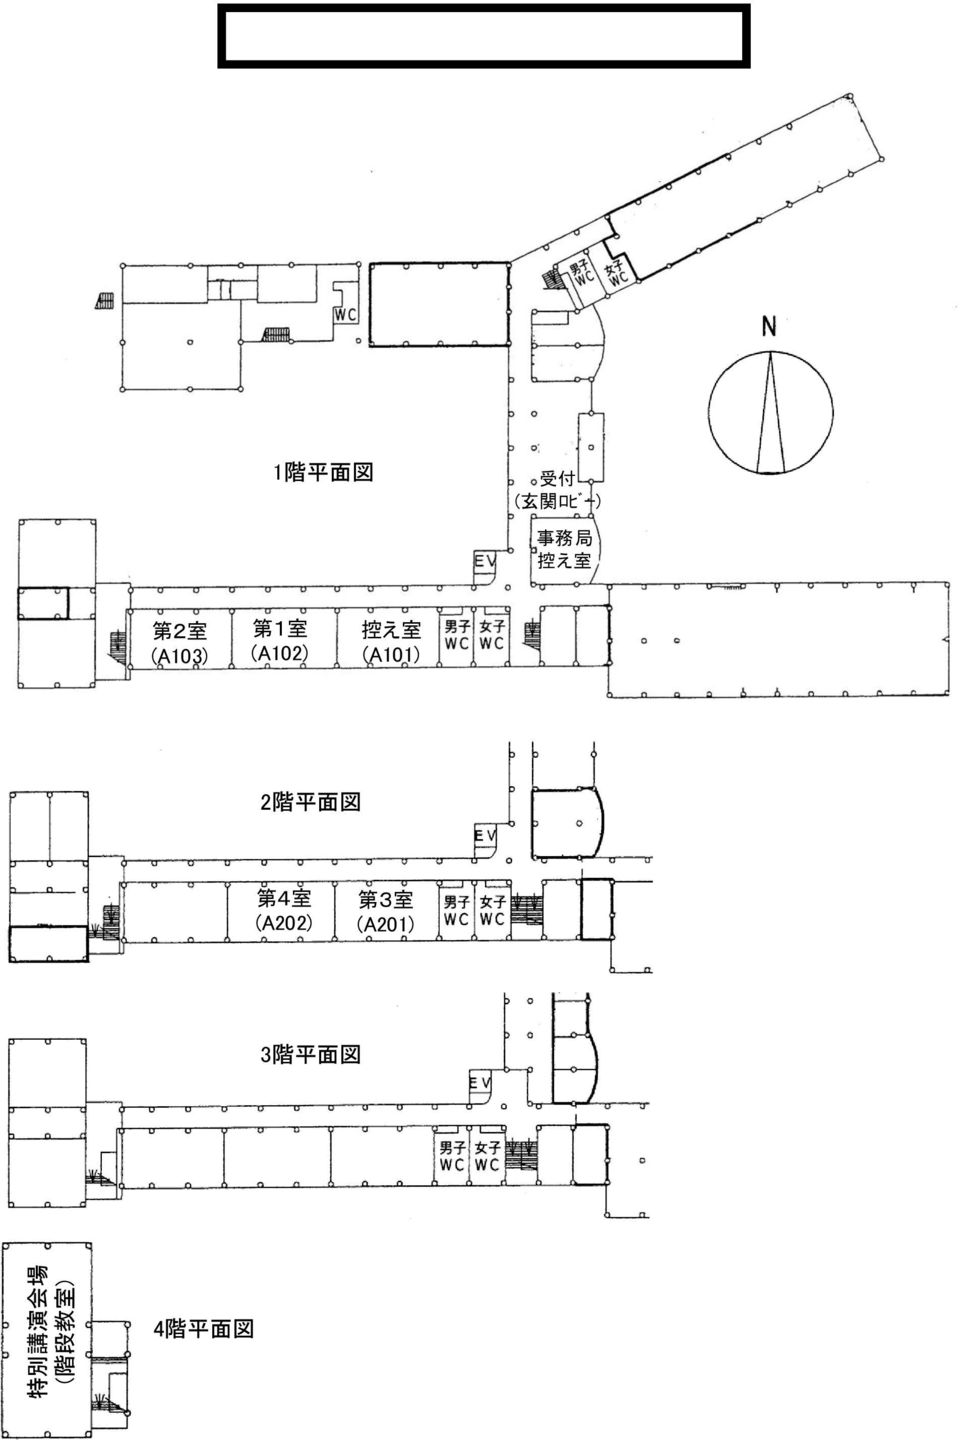 (A103) 第 1 室 (A102) 控 え 室 (A101) 2 階 平 面